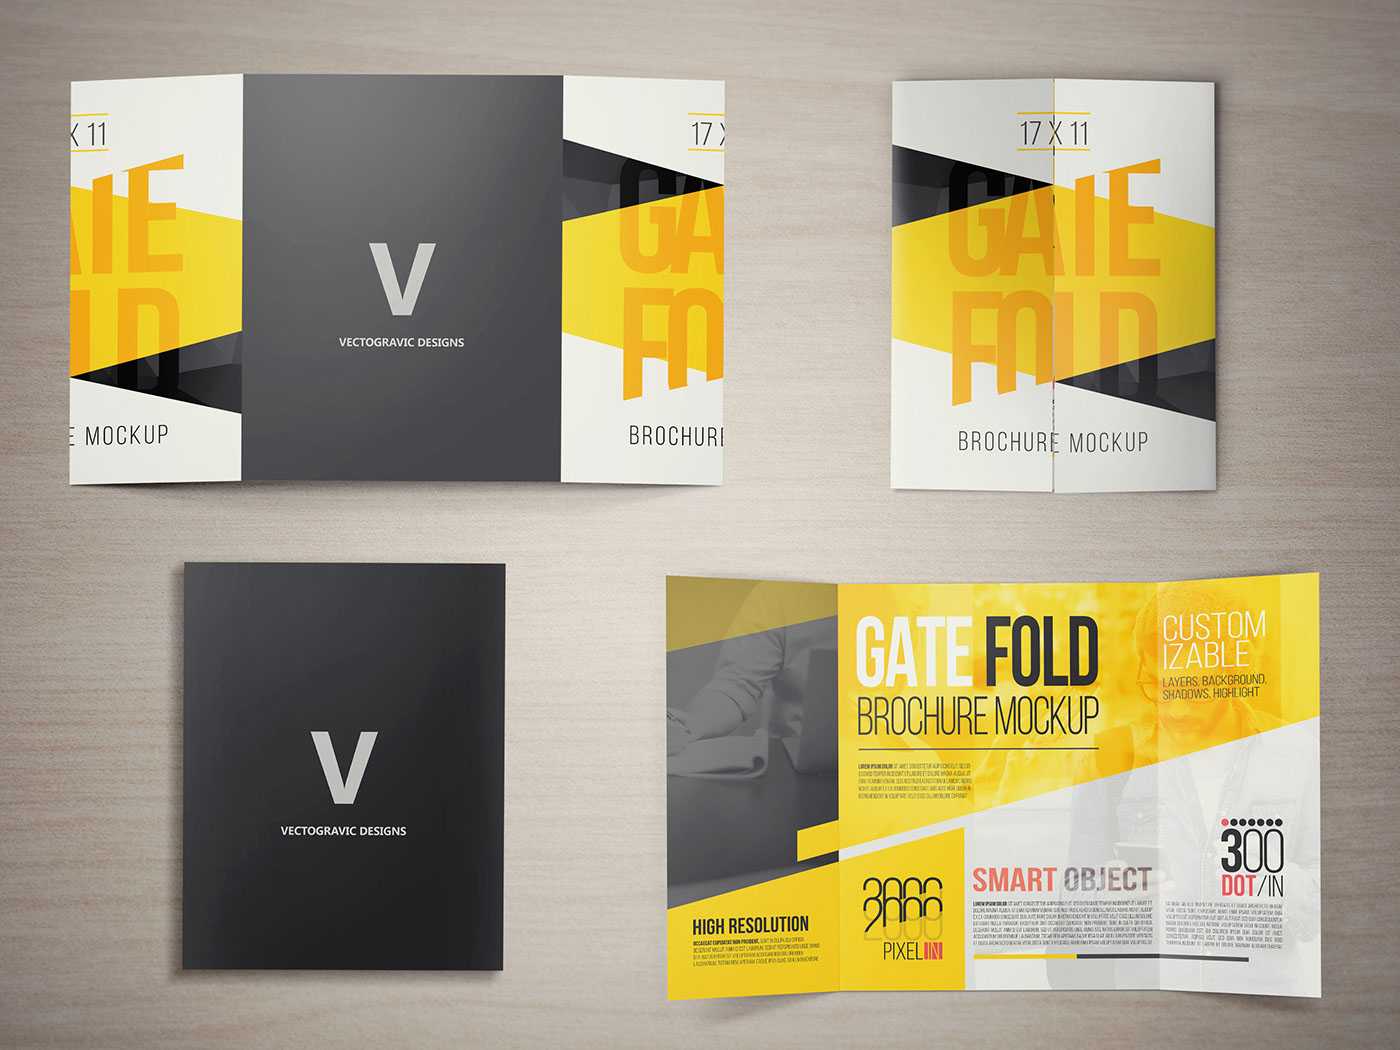 17 X 11 Gate Fold Brochure Mockup On Behance In Gate Fold Brochure Template